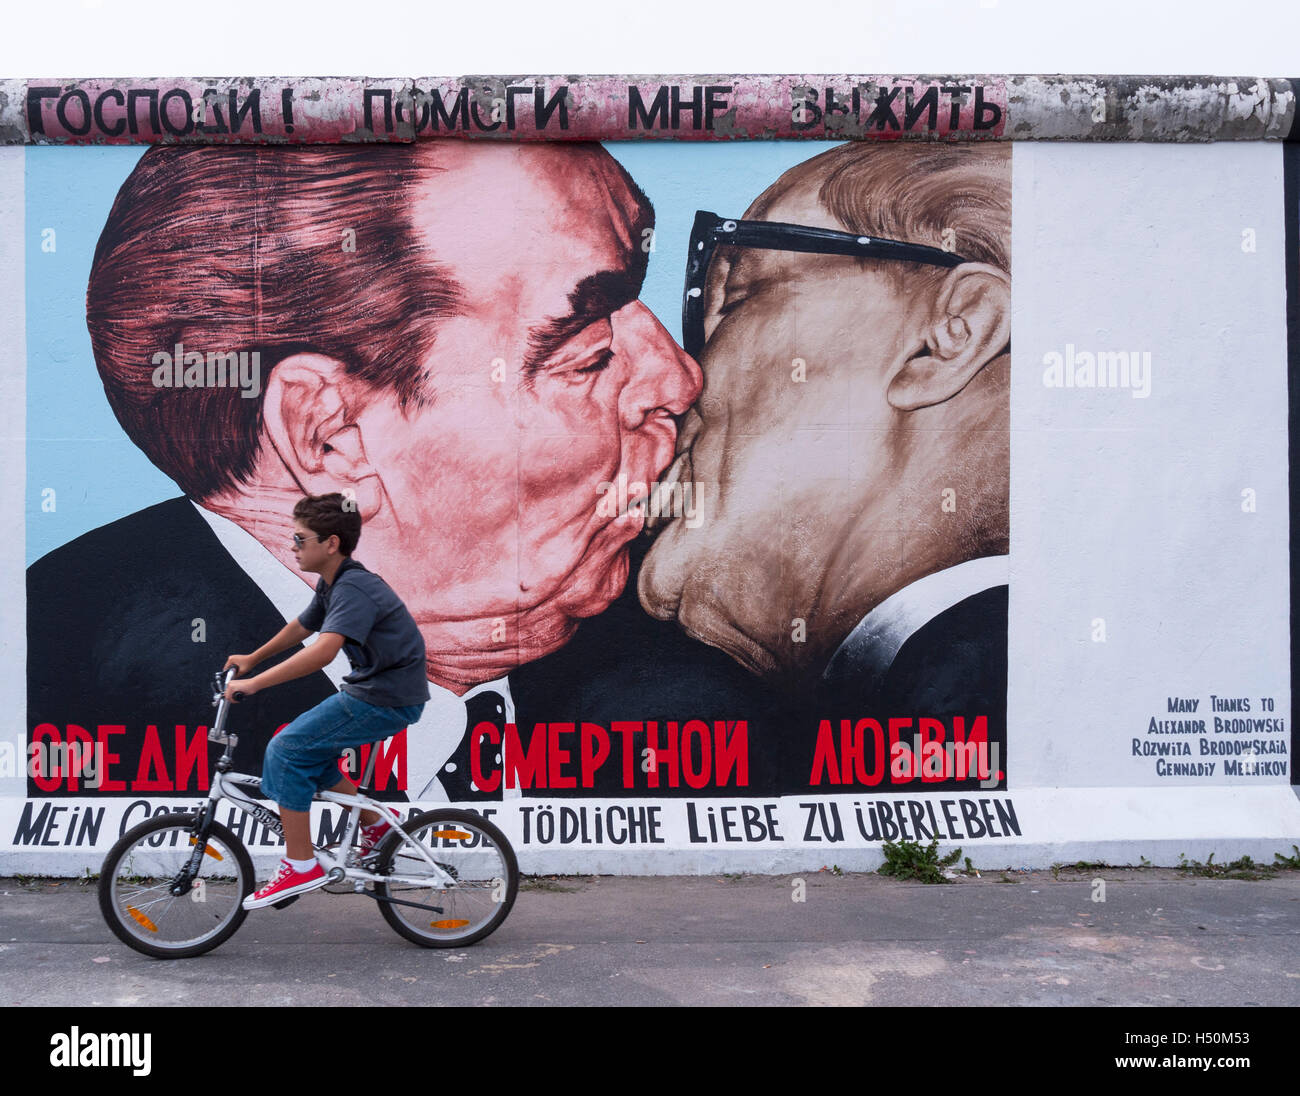 Cycles garçon passé fresque de Brejnev embrassant Honecker à East Side Gallery du mur de Berlin à Kreuzberg Friedrichshain à Berlin / Banque D'Images